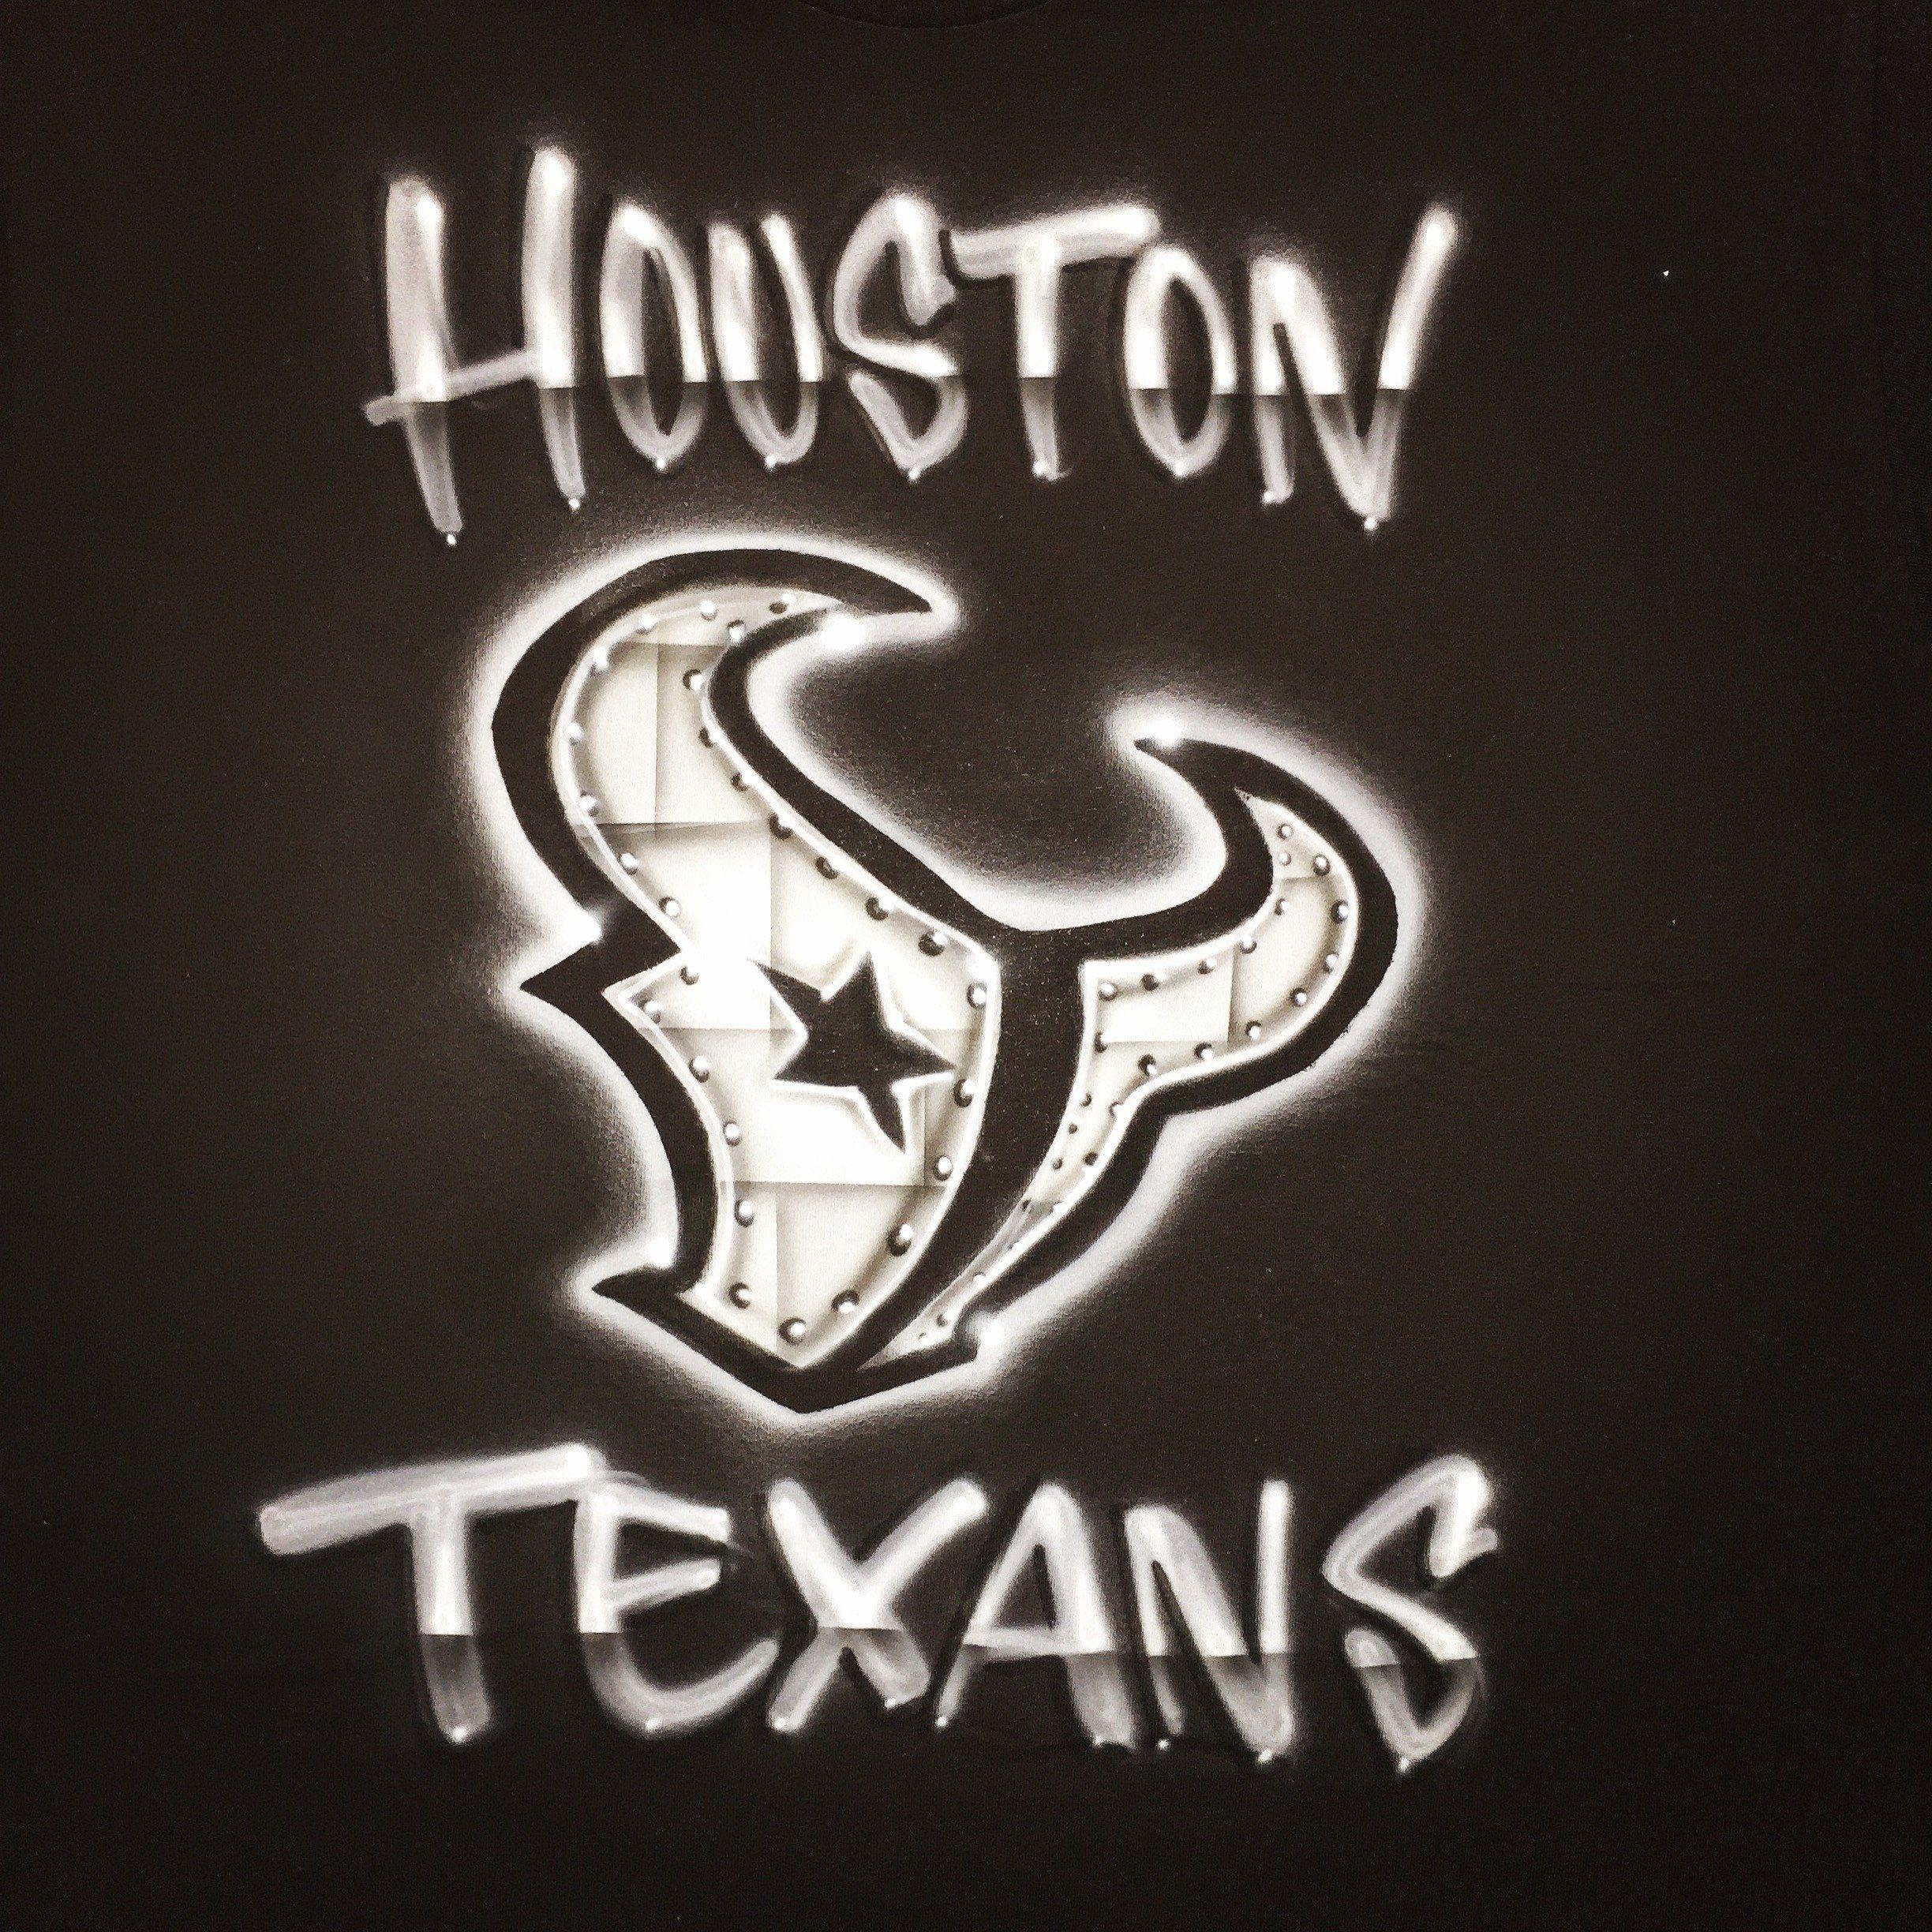 Texans Logo - Airbrush Black and White Texans Logo